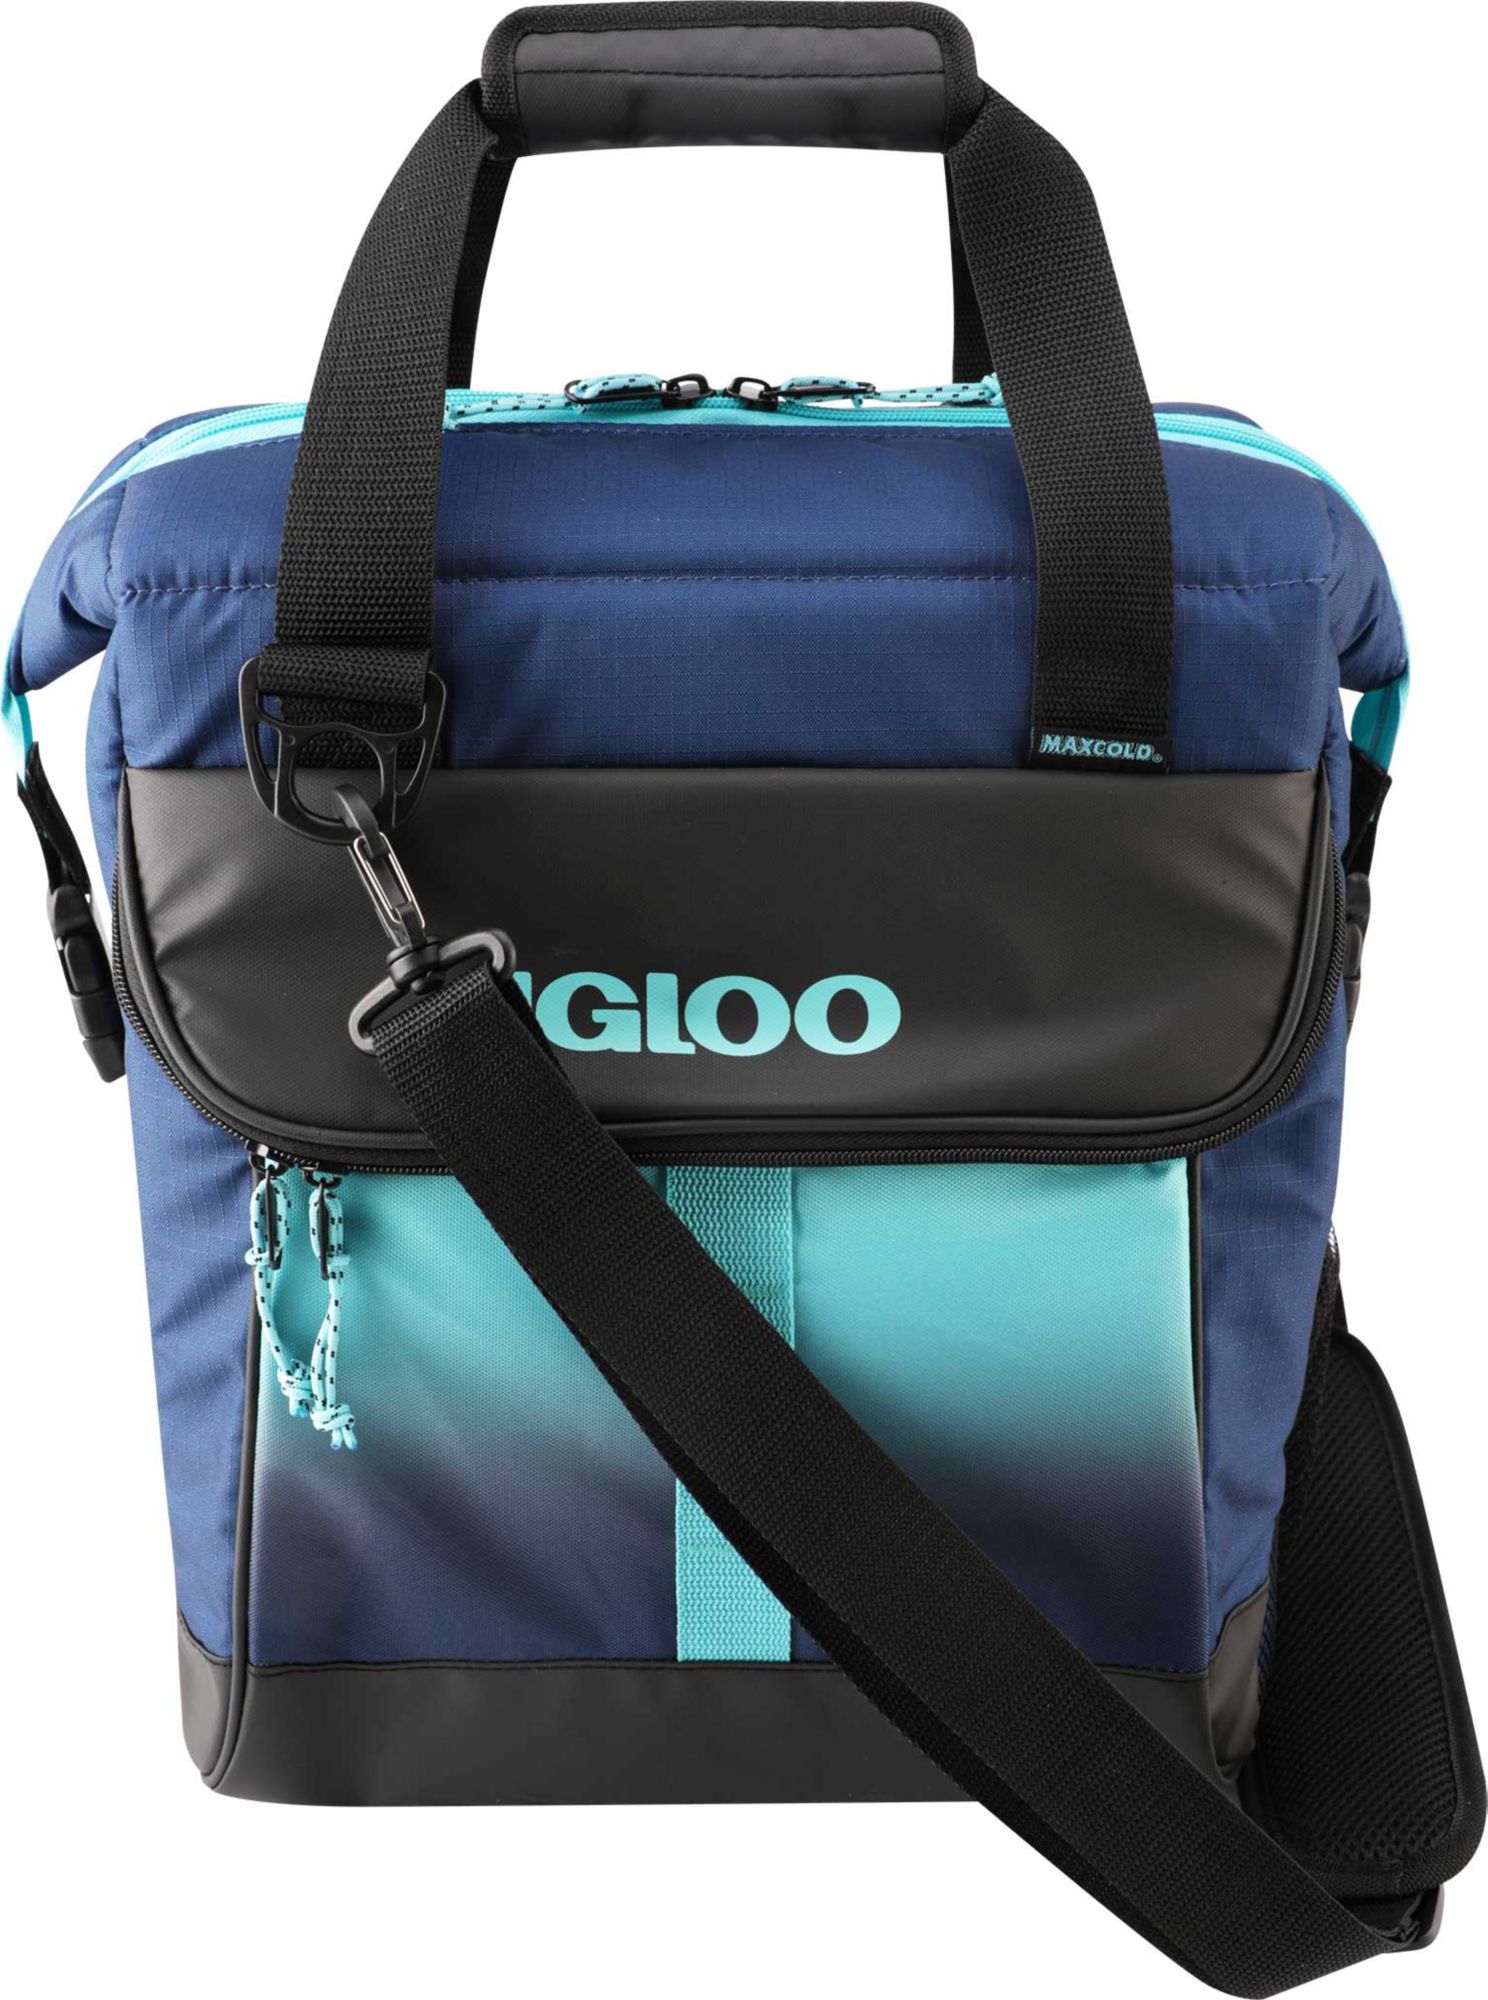 igloo marine backpack cooler